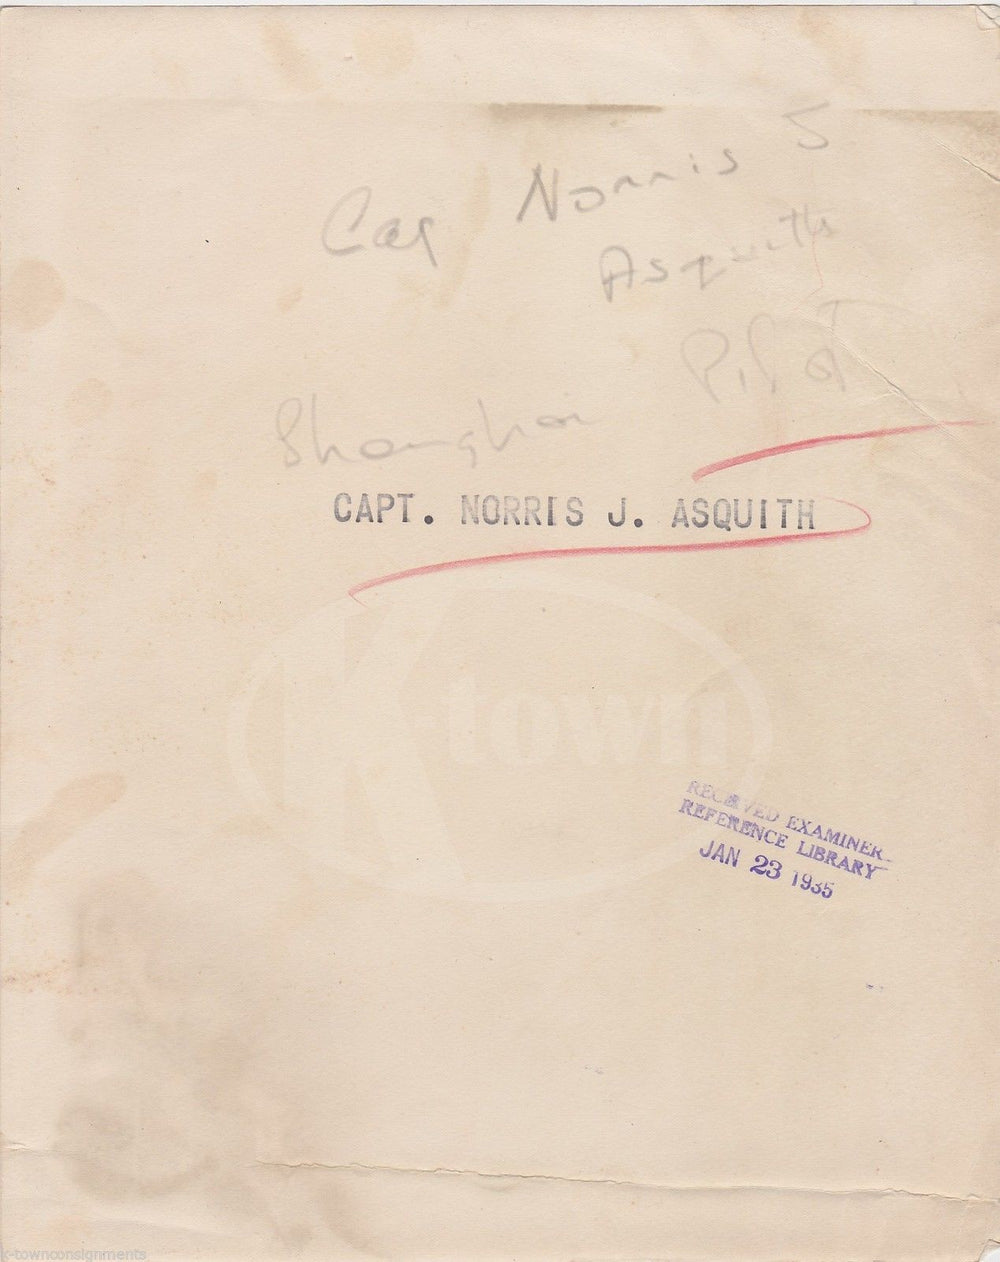 CAPTAIN NORRIS J. ASQUITH PILOT ANTIQUE NEWS PRESS PHOTO 1935 - K-townConsignments